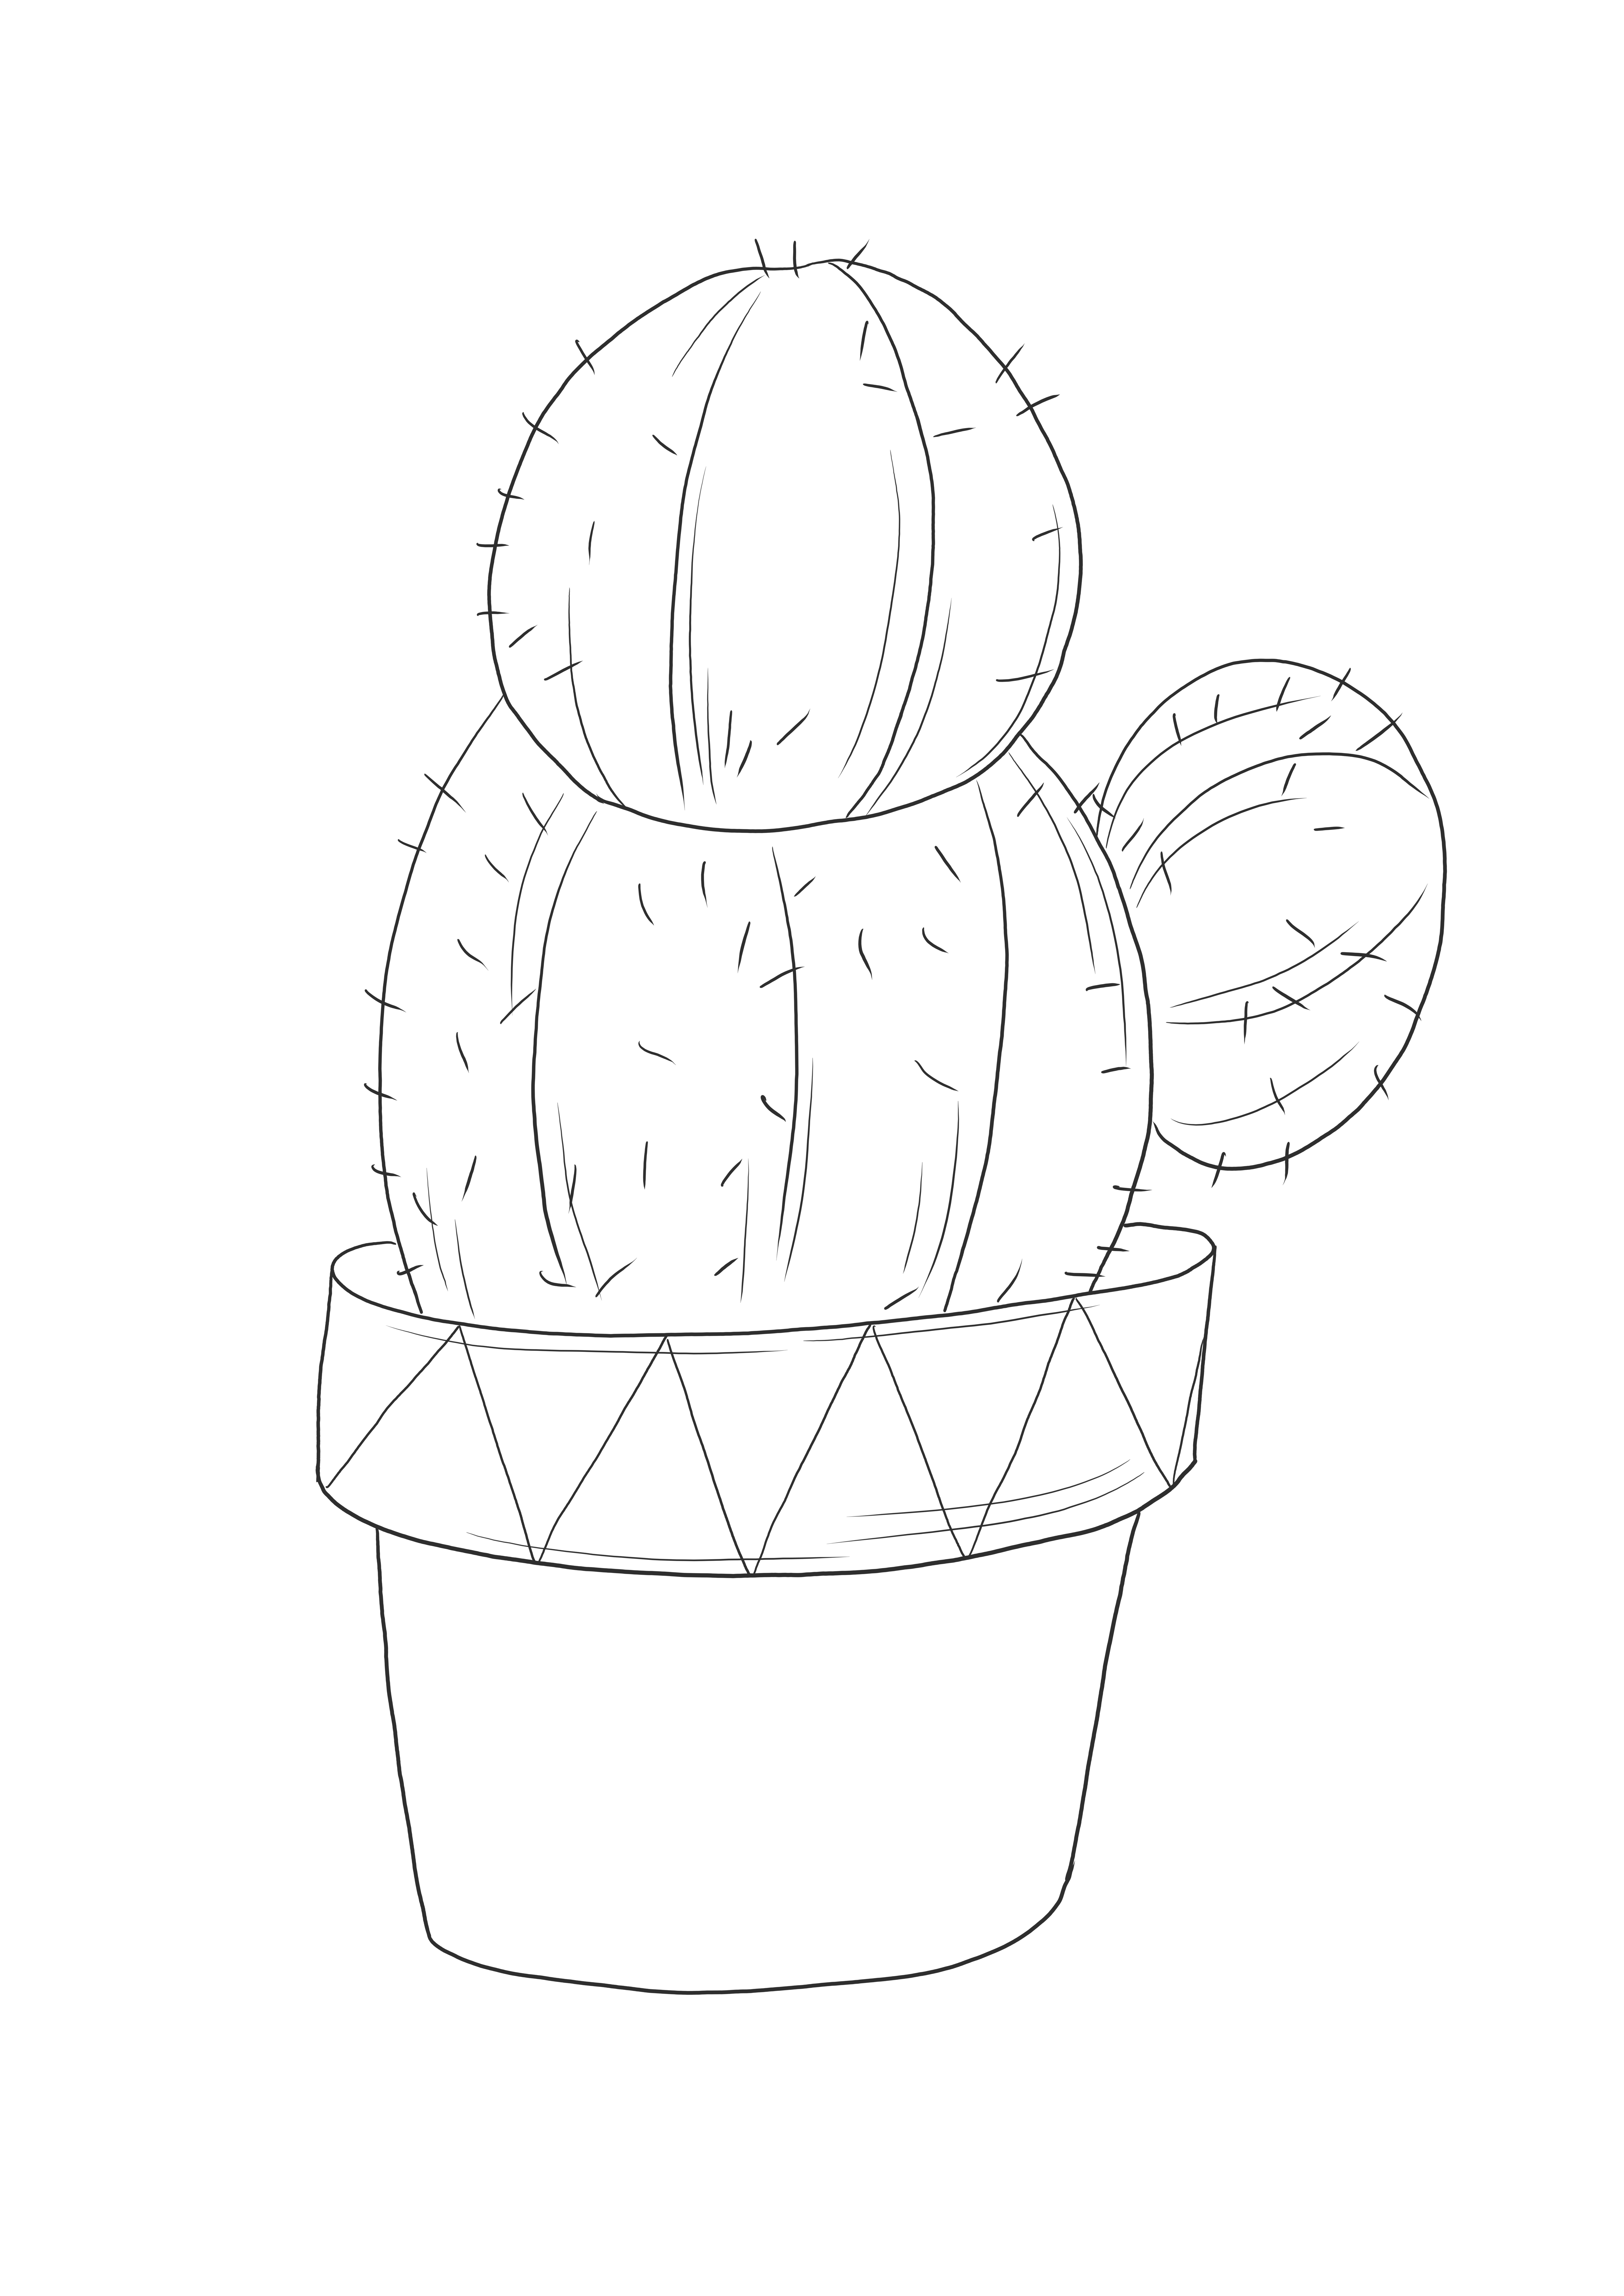 Un semplice foglio da colorare di un cactus in un vaso da stampare gratuitamente